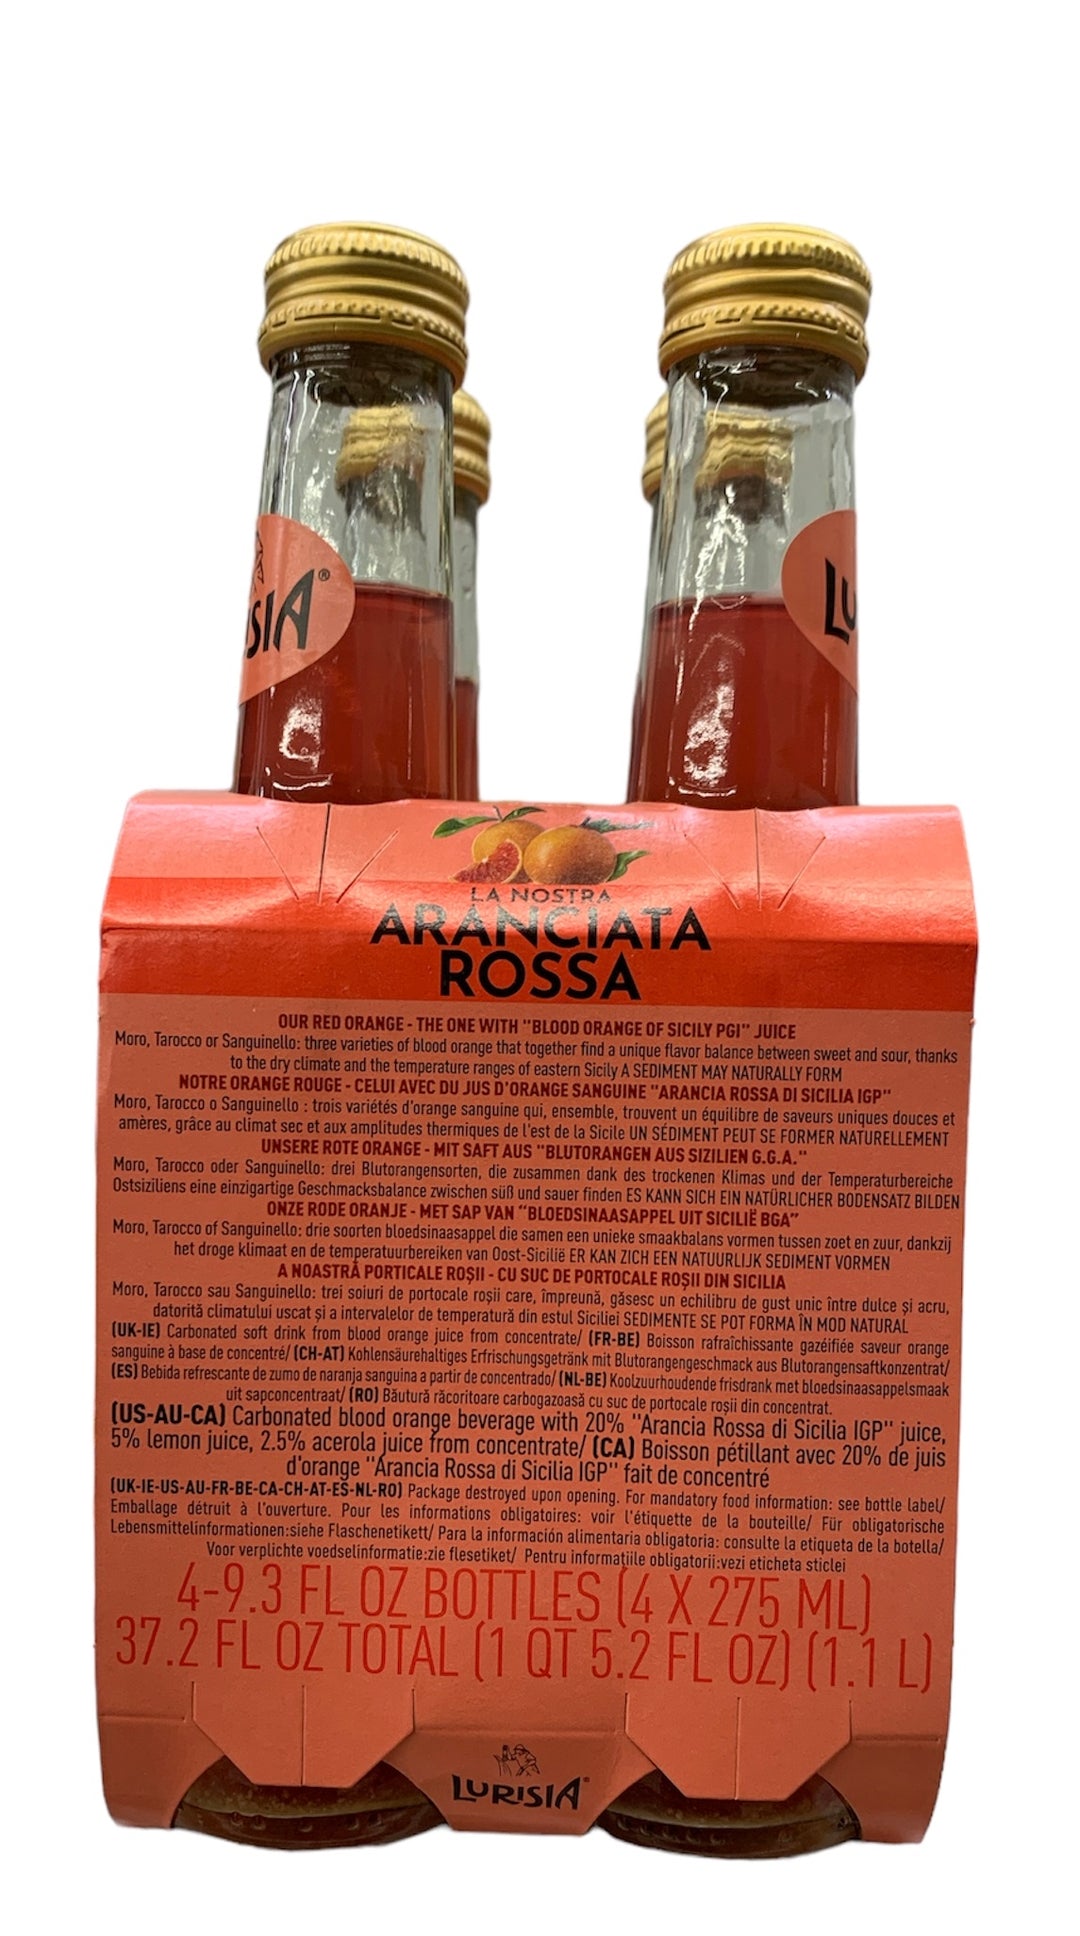 Boisson Petillant La Nostra Aranciata Rossa 4X275ml